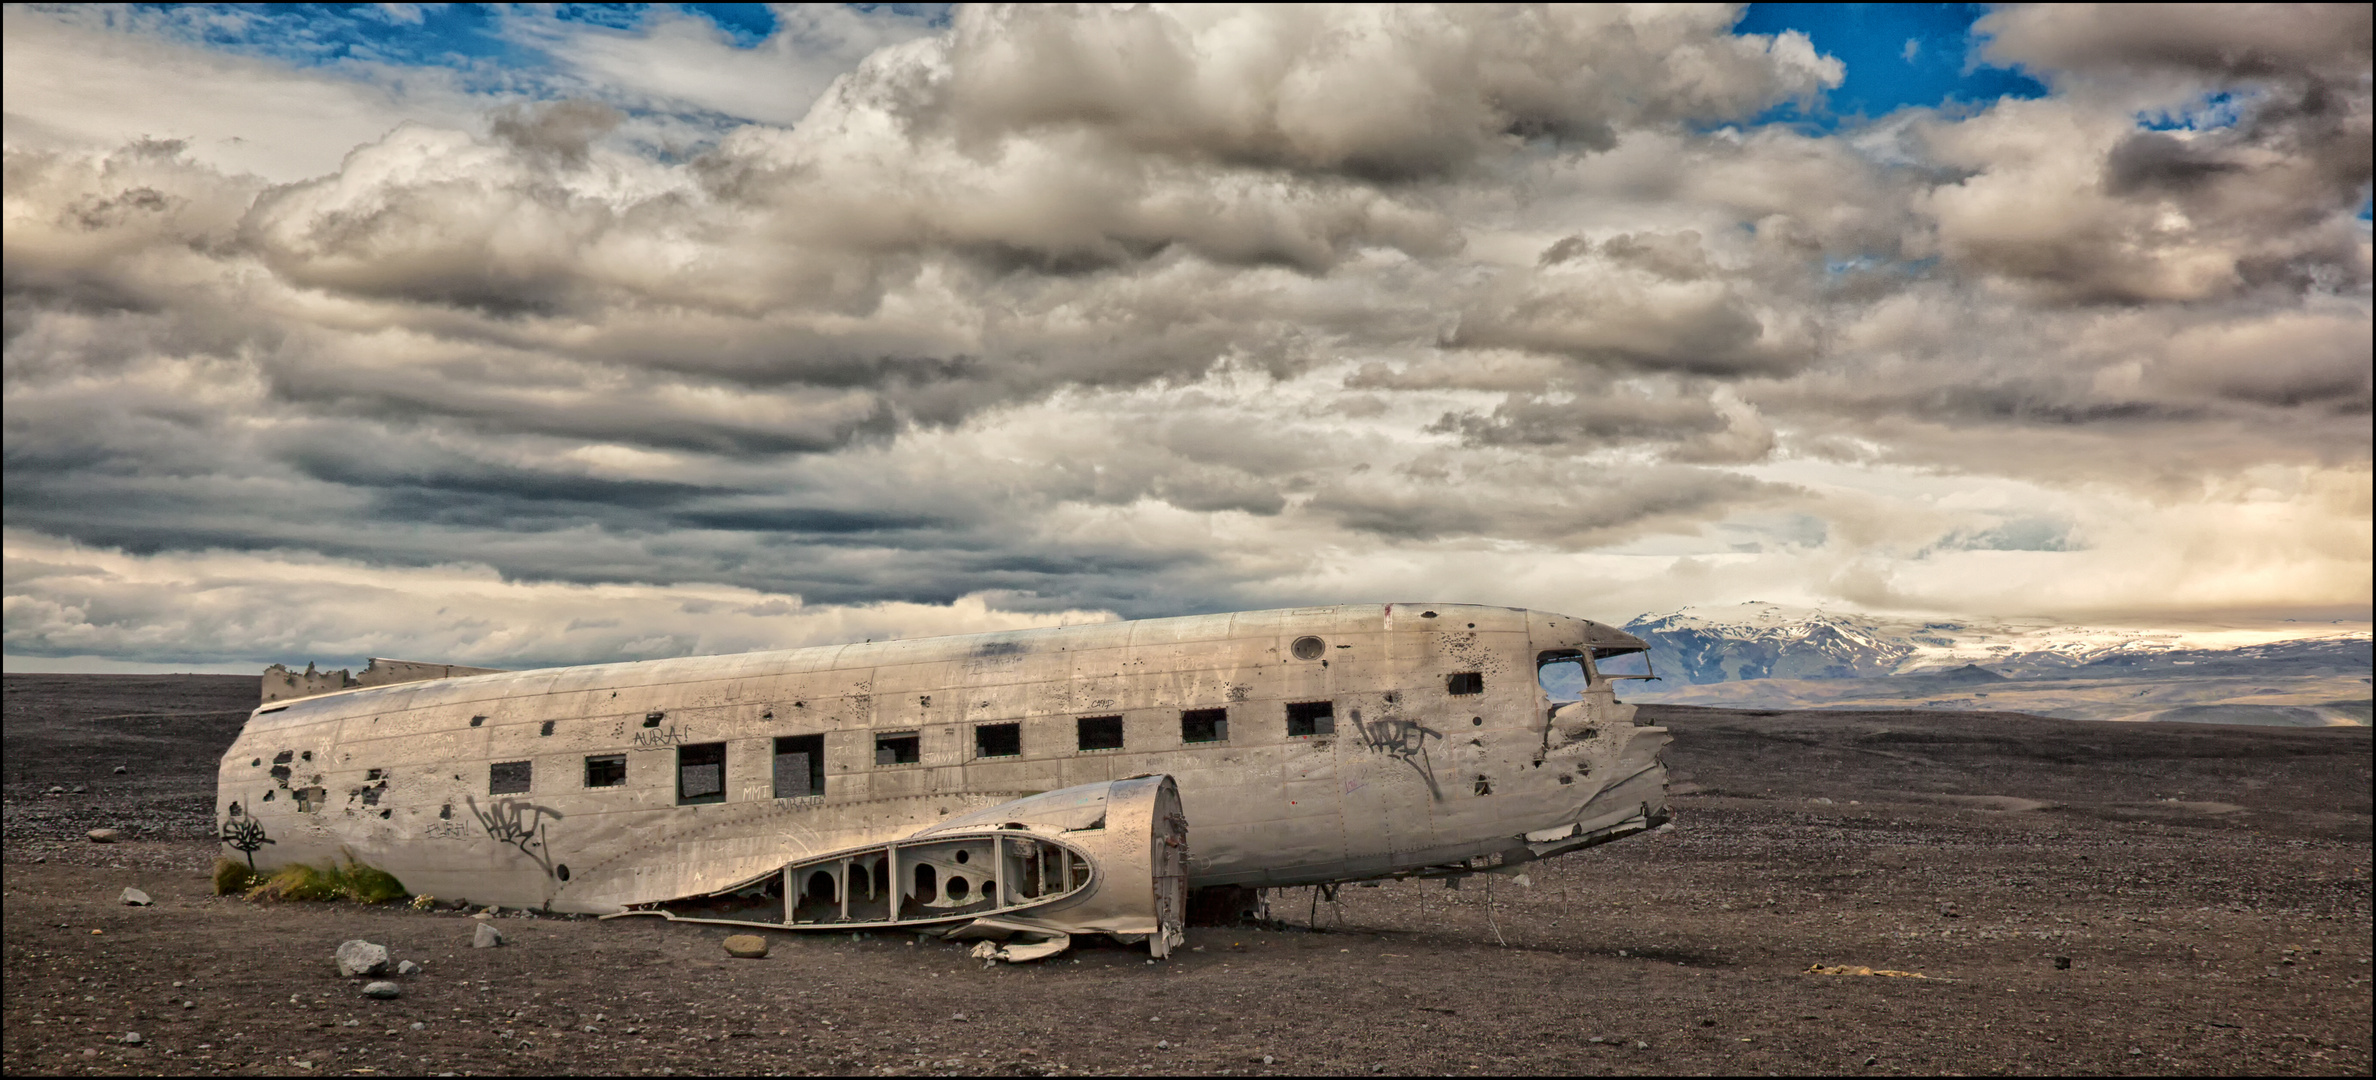 Douglas Super DC-3 am ...